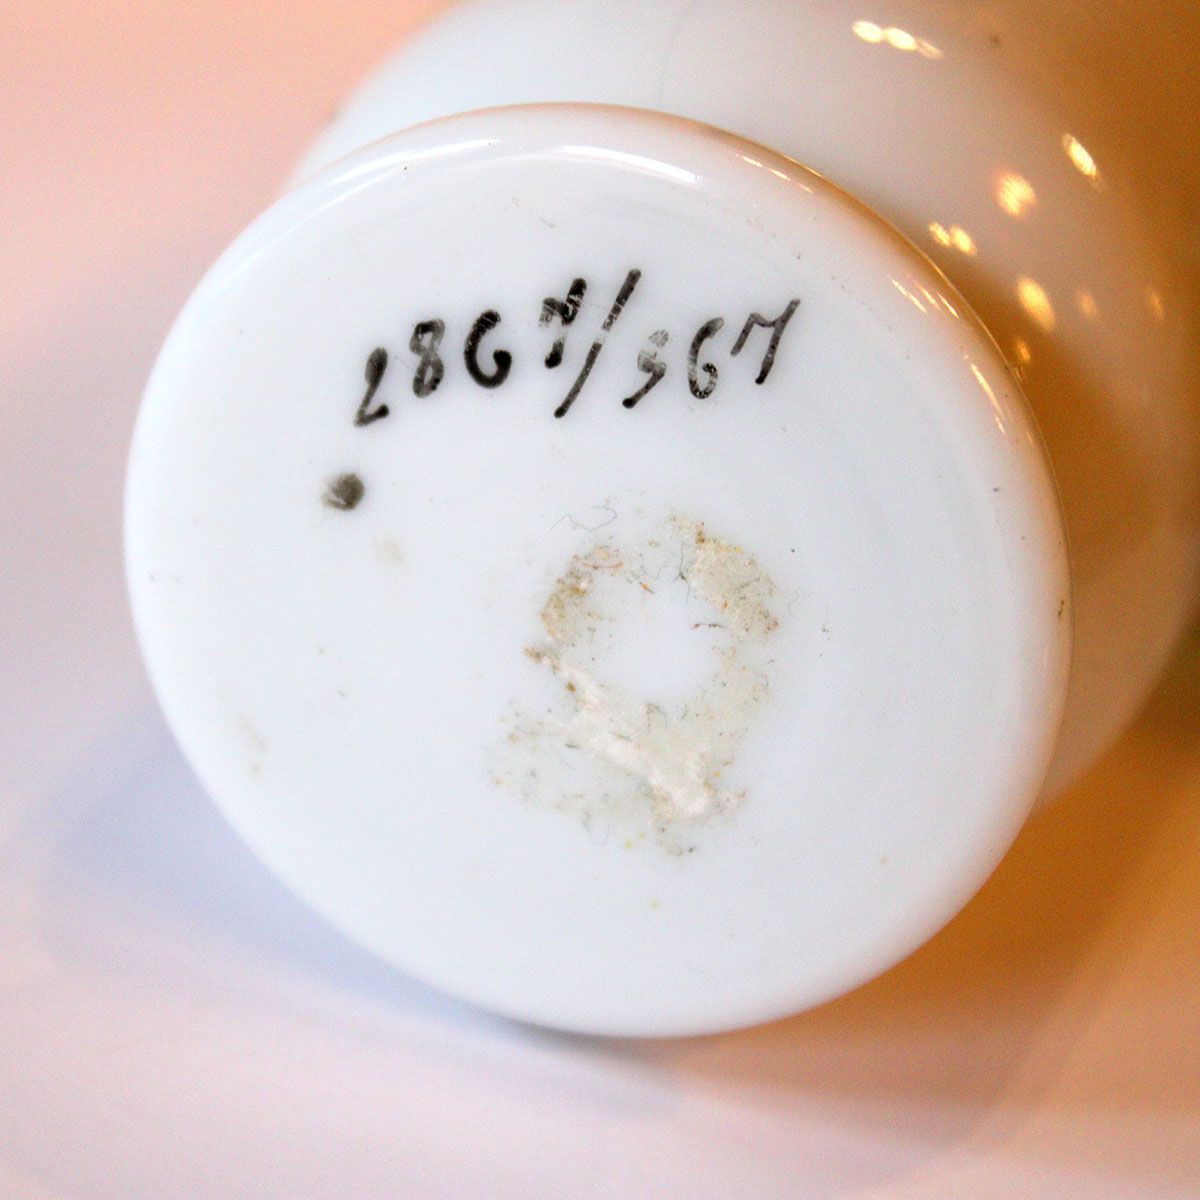 Vase fra Brendekilde med nummerering Nr. 2867/367